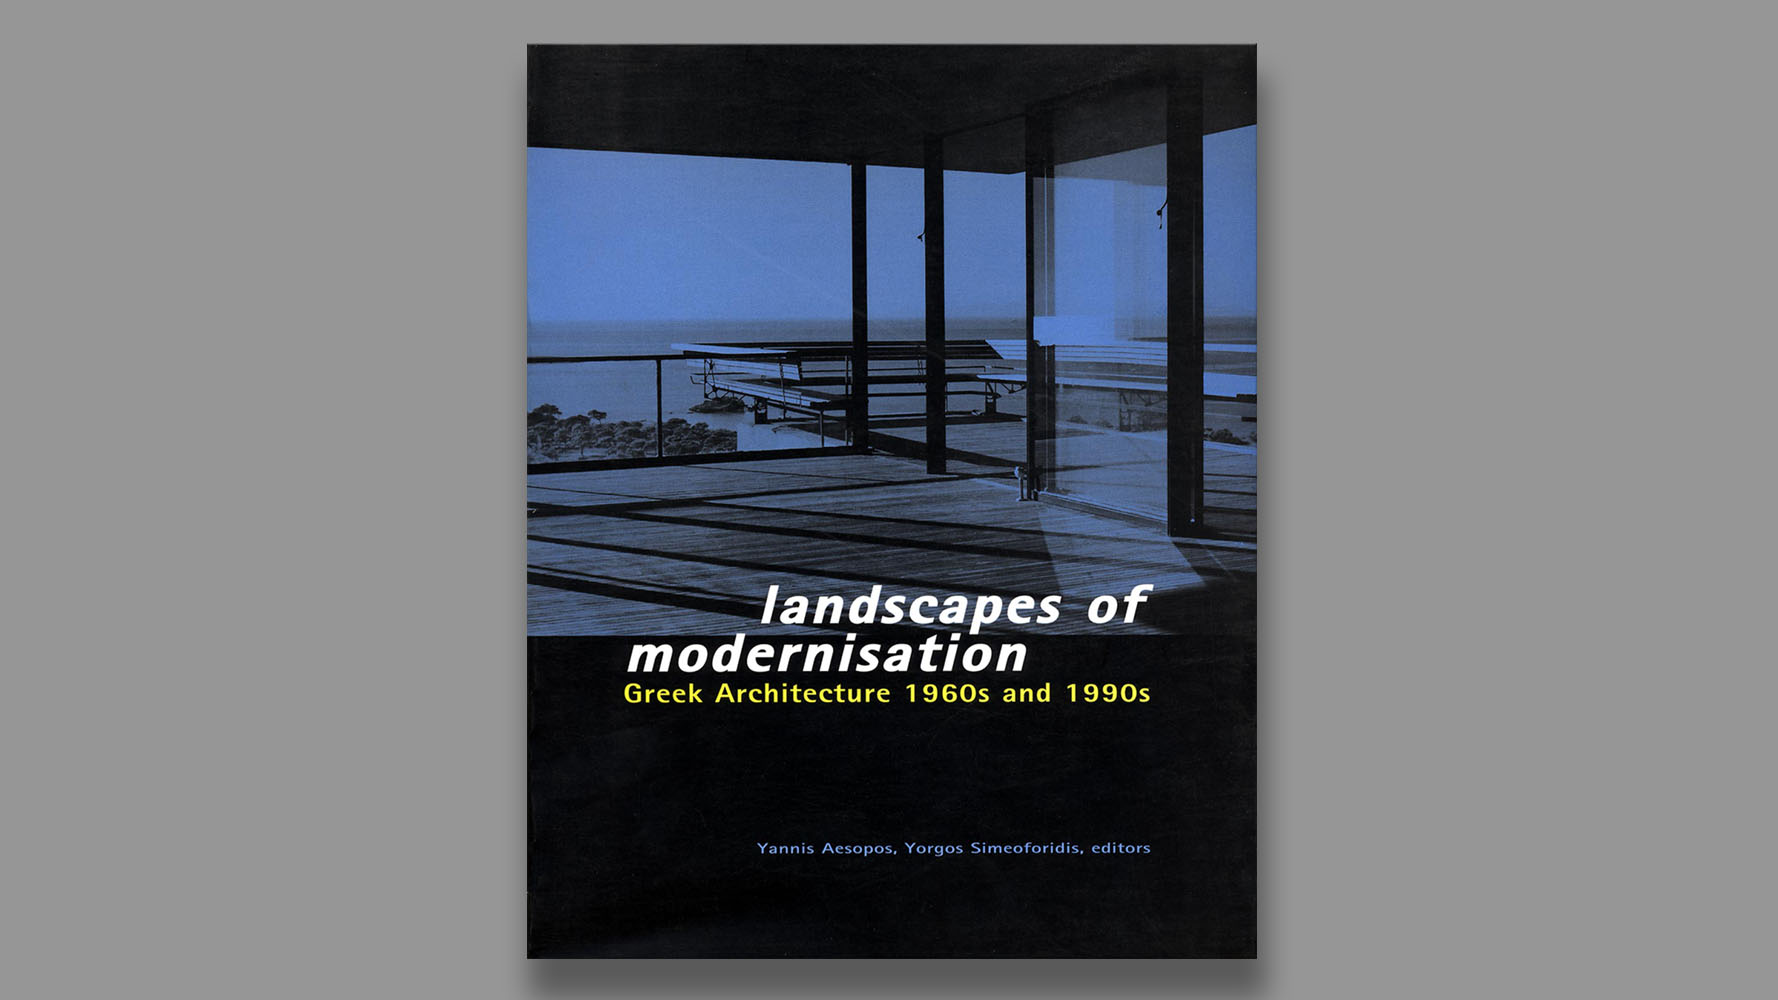 Landscapes of Modernisation, Megapolis press, 1999